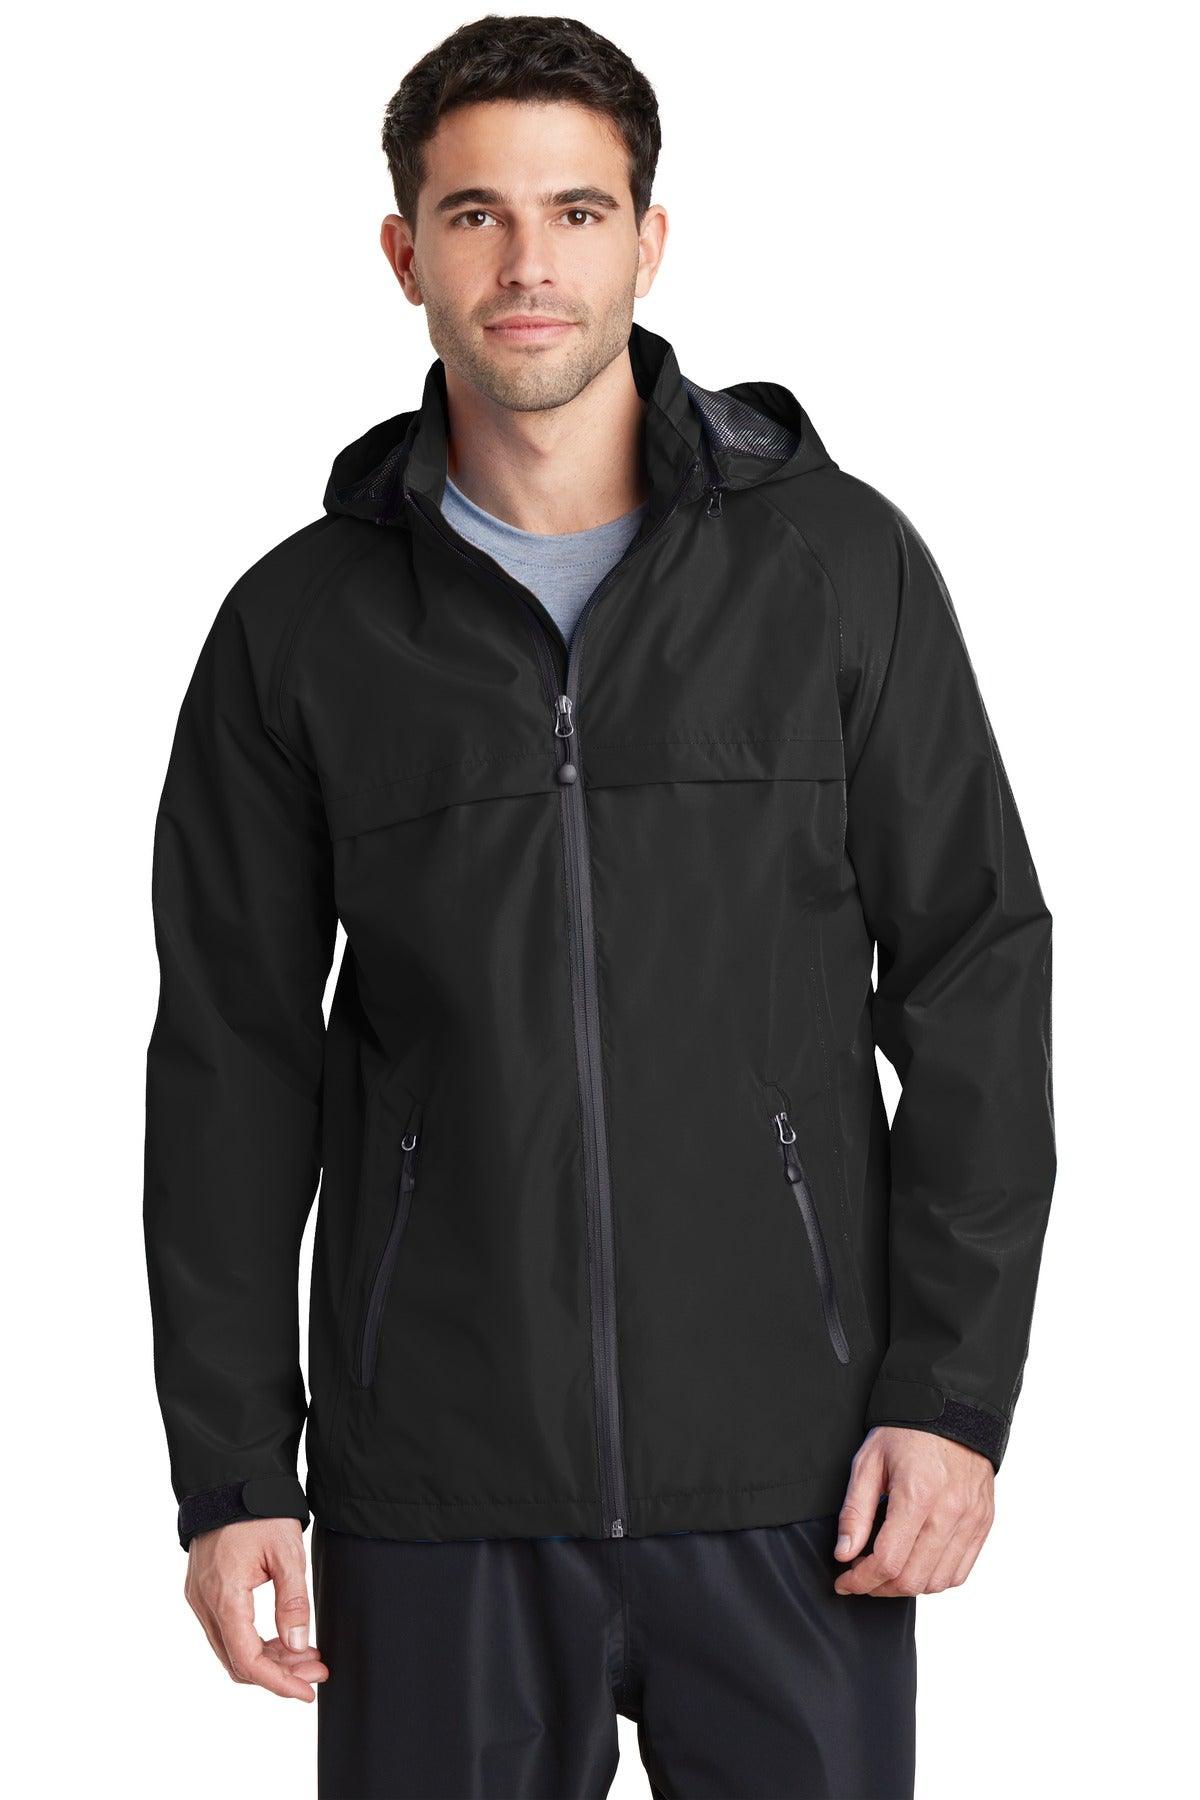 Port Authority Torrent Waterproof Jacket. J333 - Dresses Max